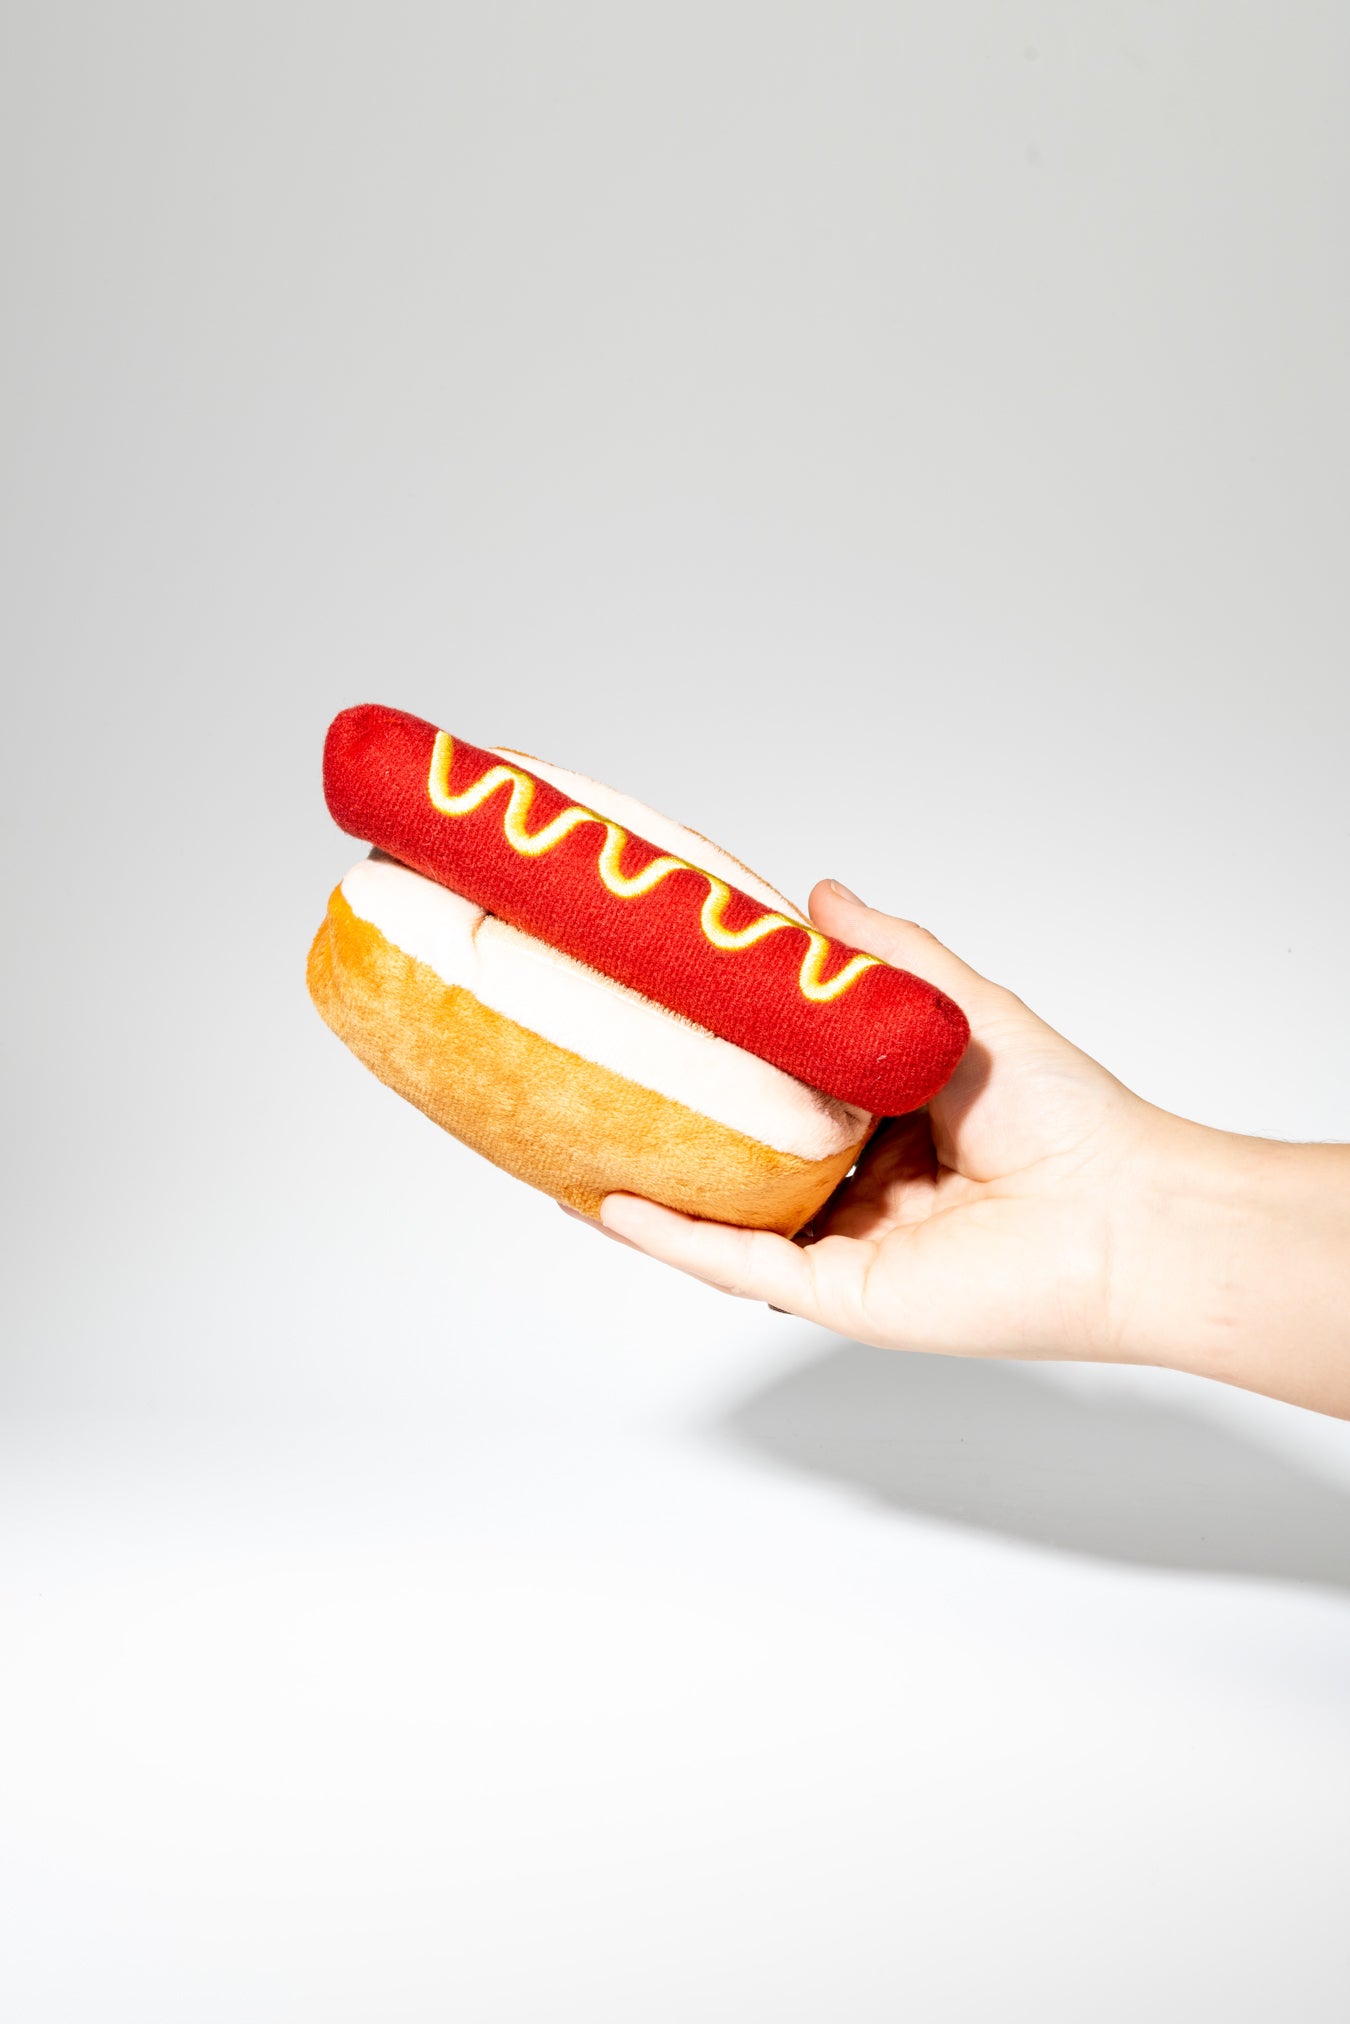 Hotdog toy